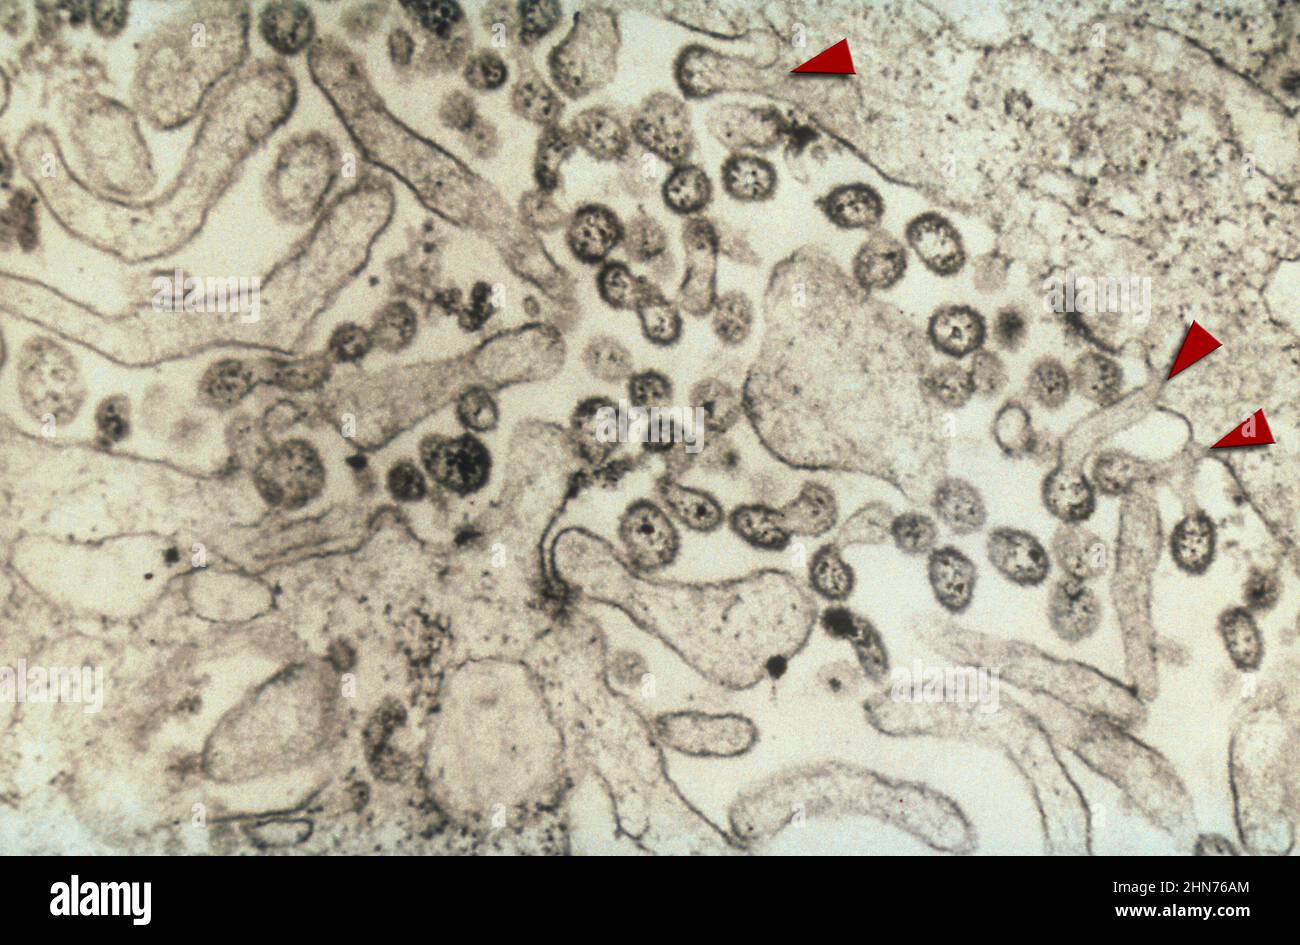 TEM-Bild mit zahlreichen Lassa-Virus-Virionen. Viele der Virionen können außerhalb der Wirtszelle gesehen werden, aber einige sind weggebrochen Stockfoto